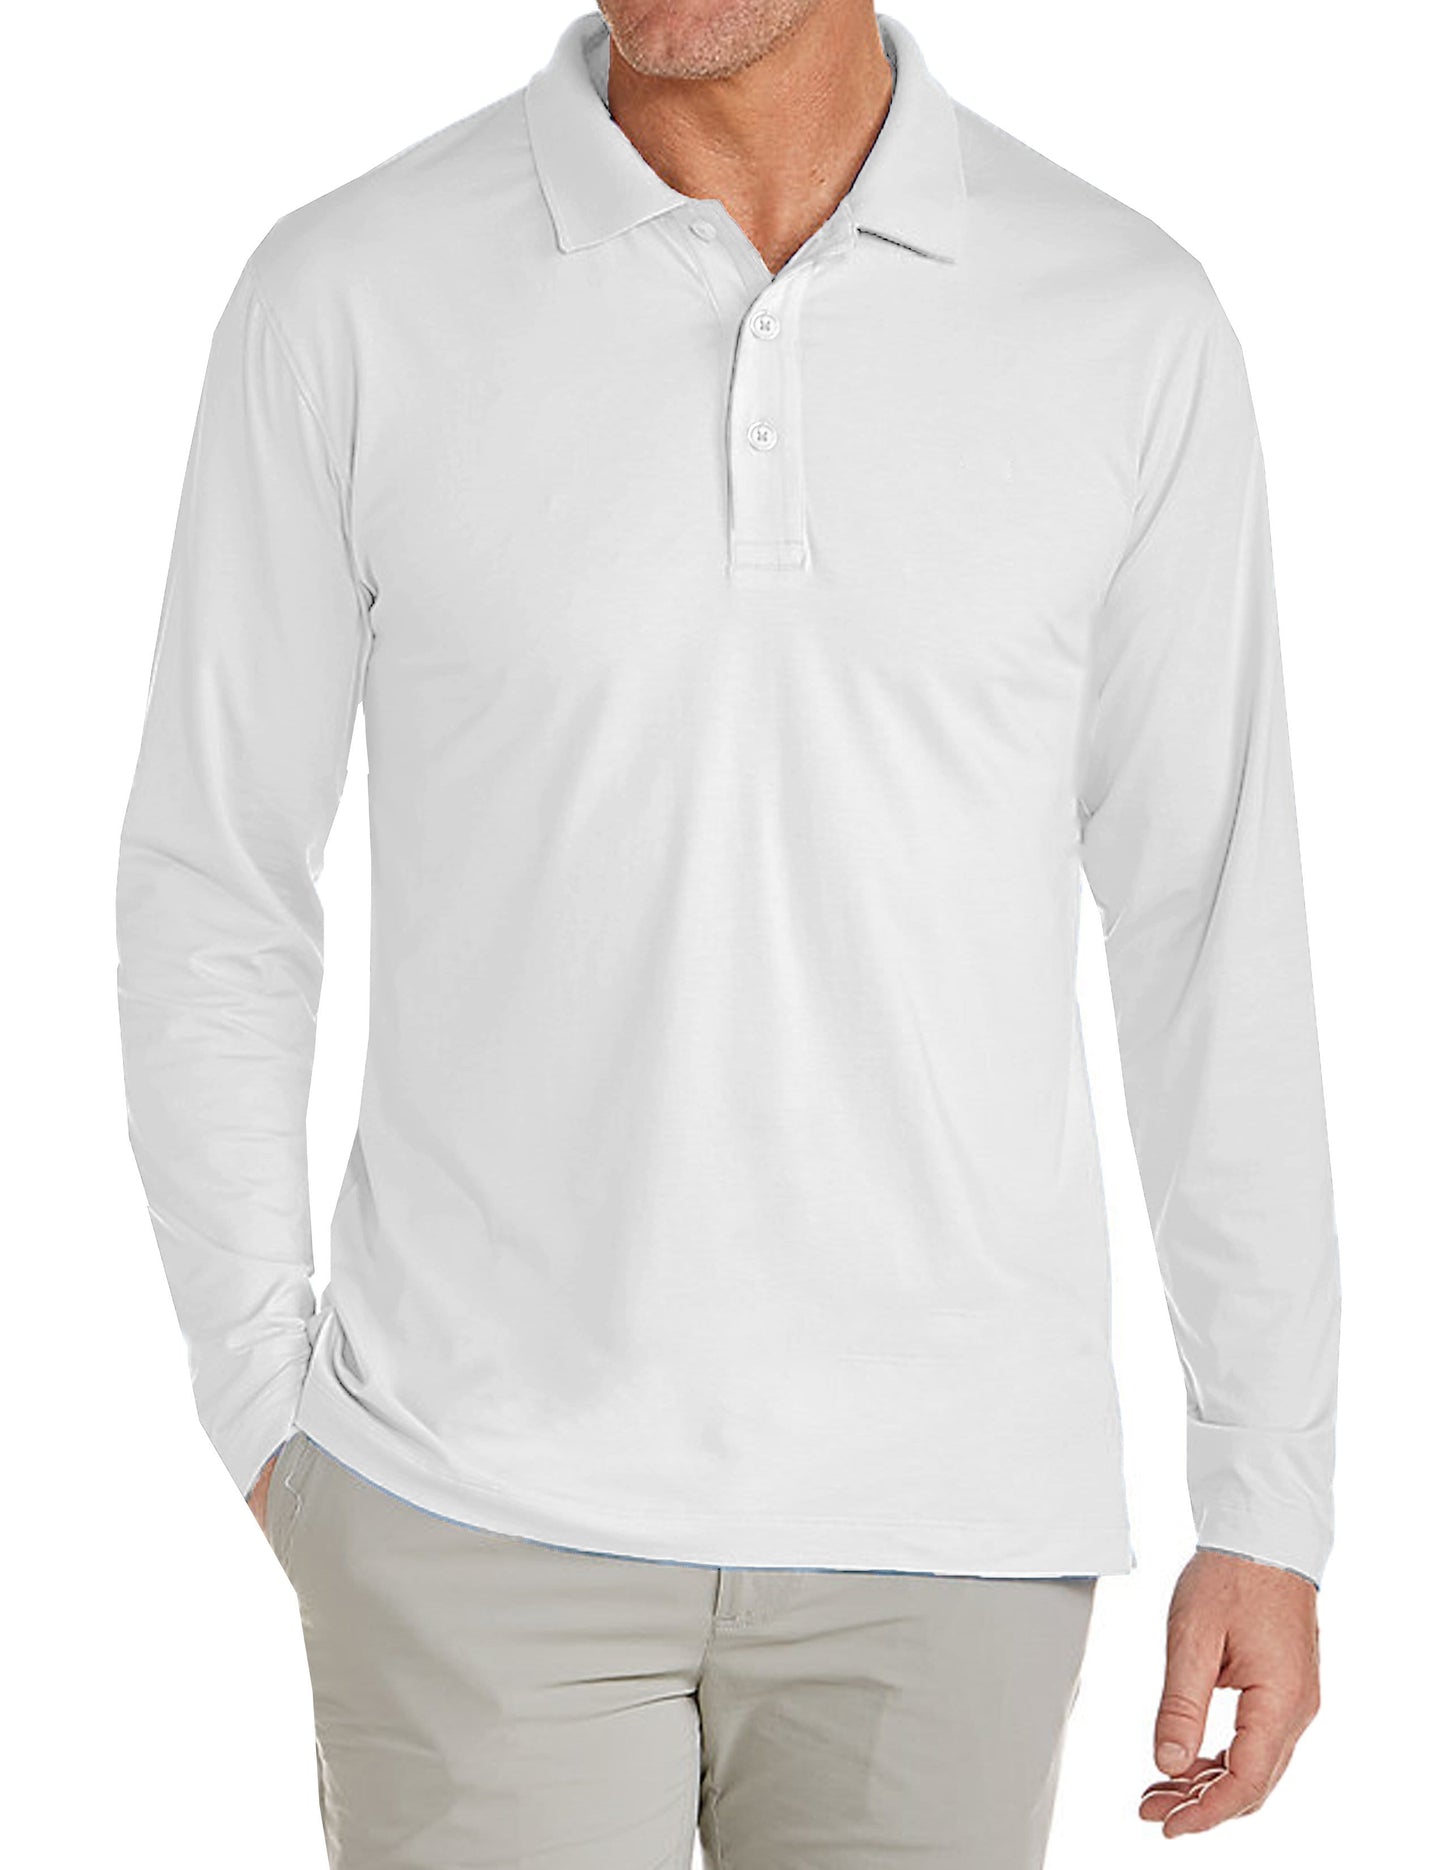 Men's Long Sleeve Pique Polo Shirt - GalaxybyHarvic